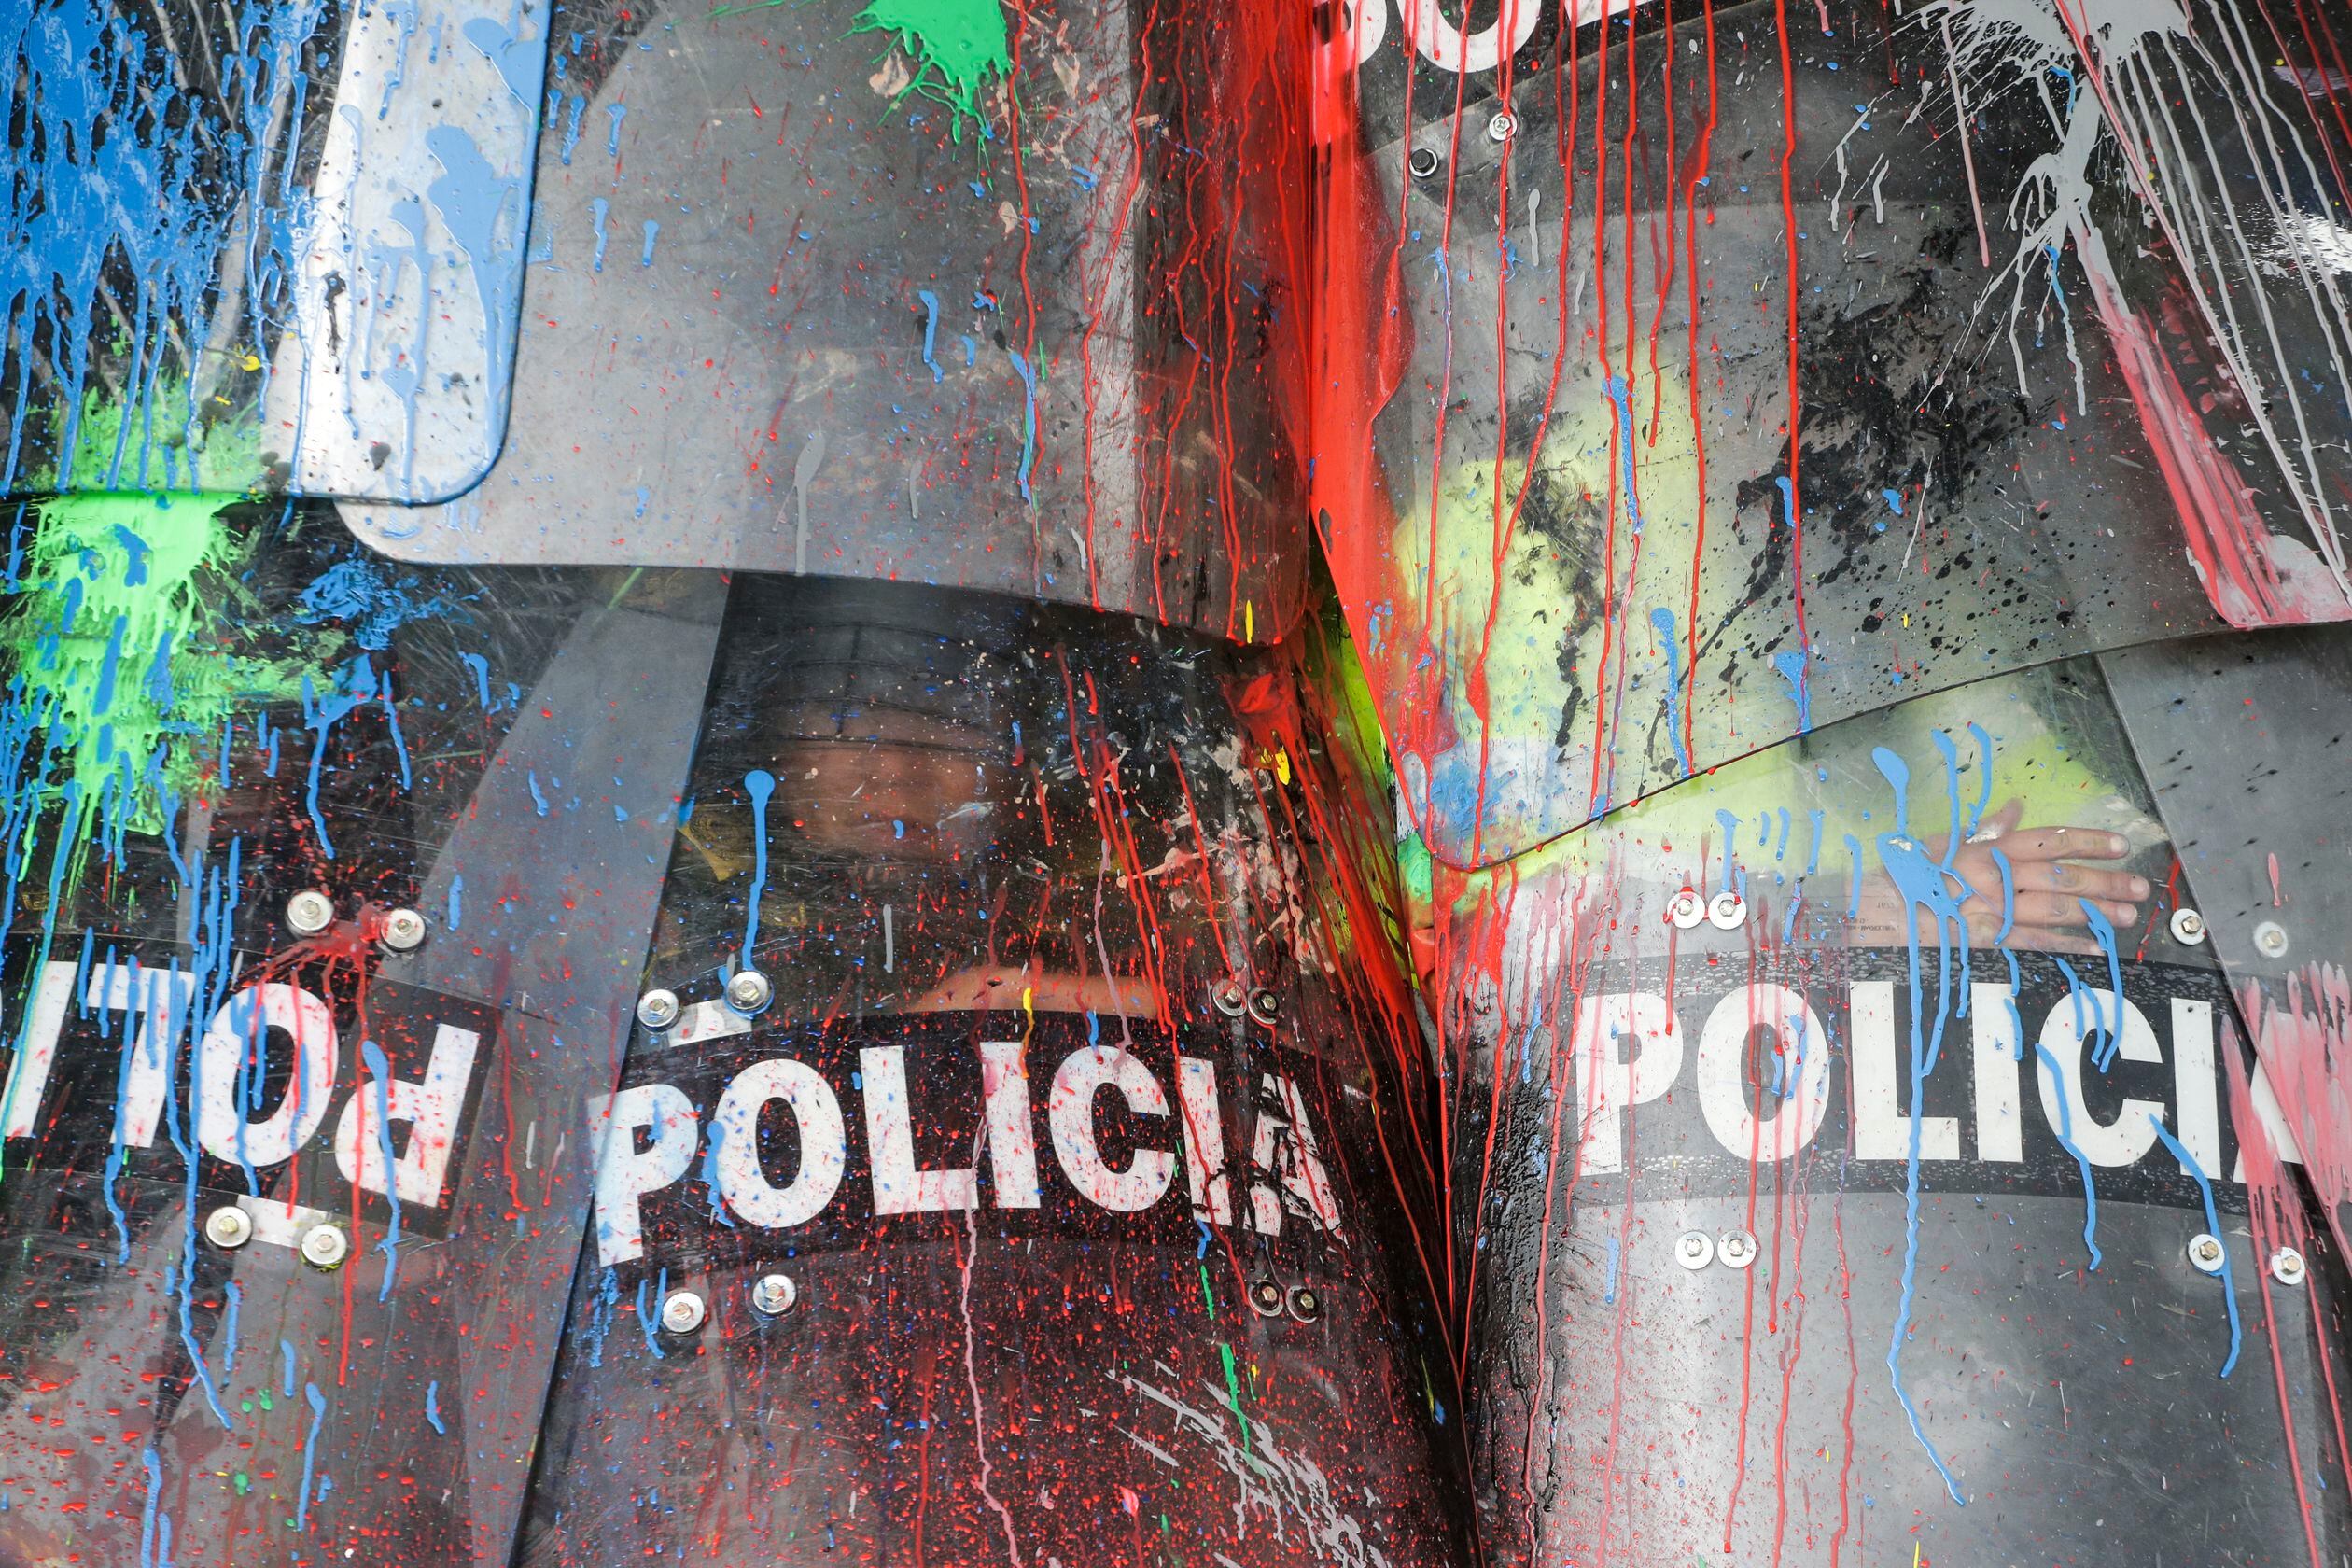 Escudos de la Policía Nacional manchados de pintura durante una protesta.